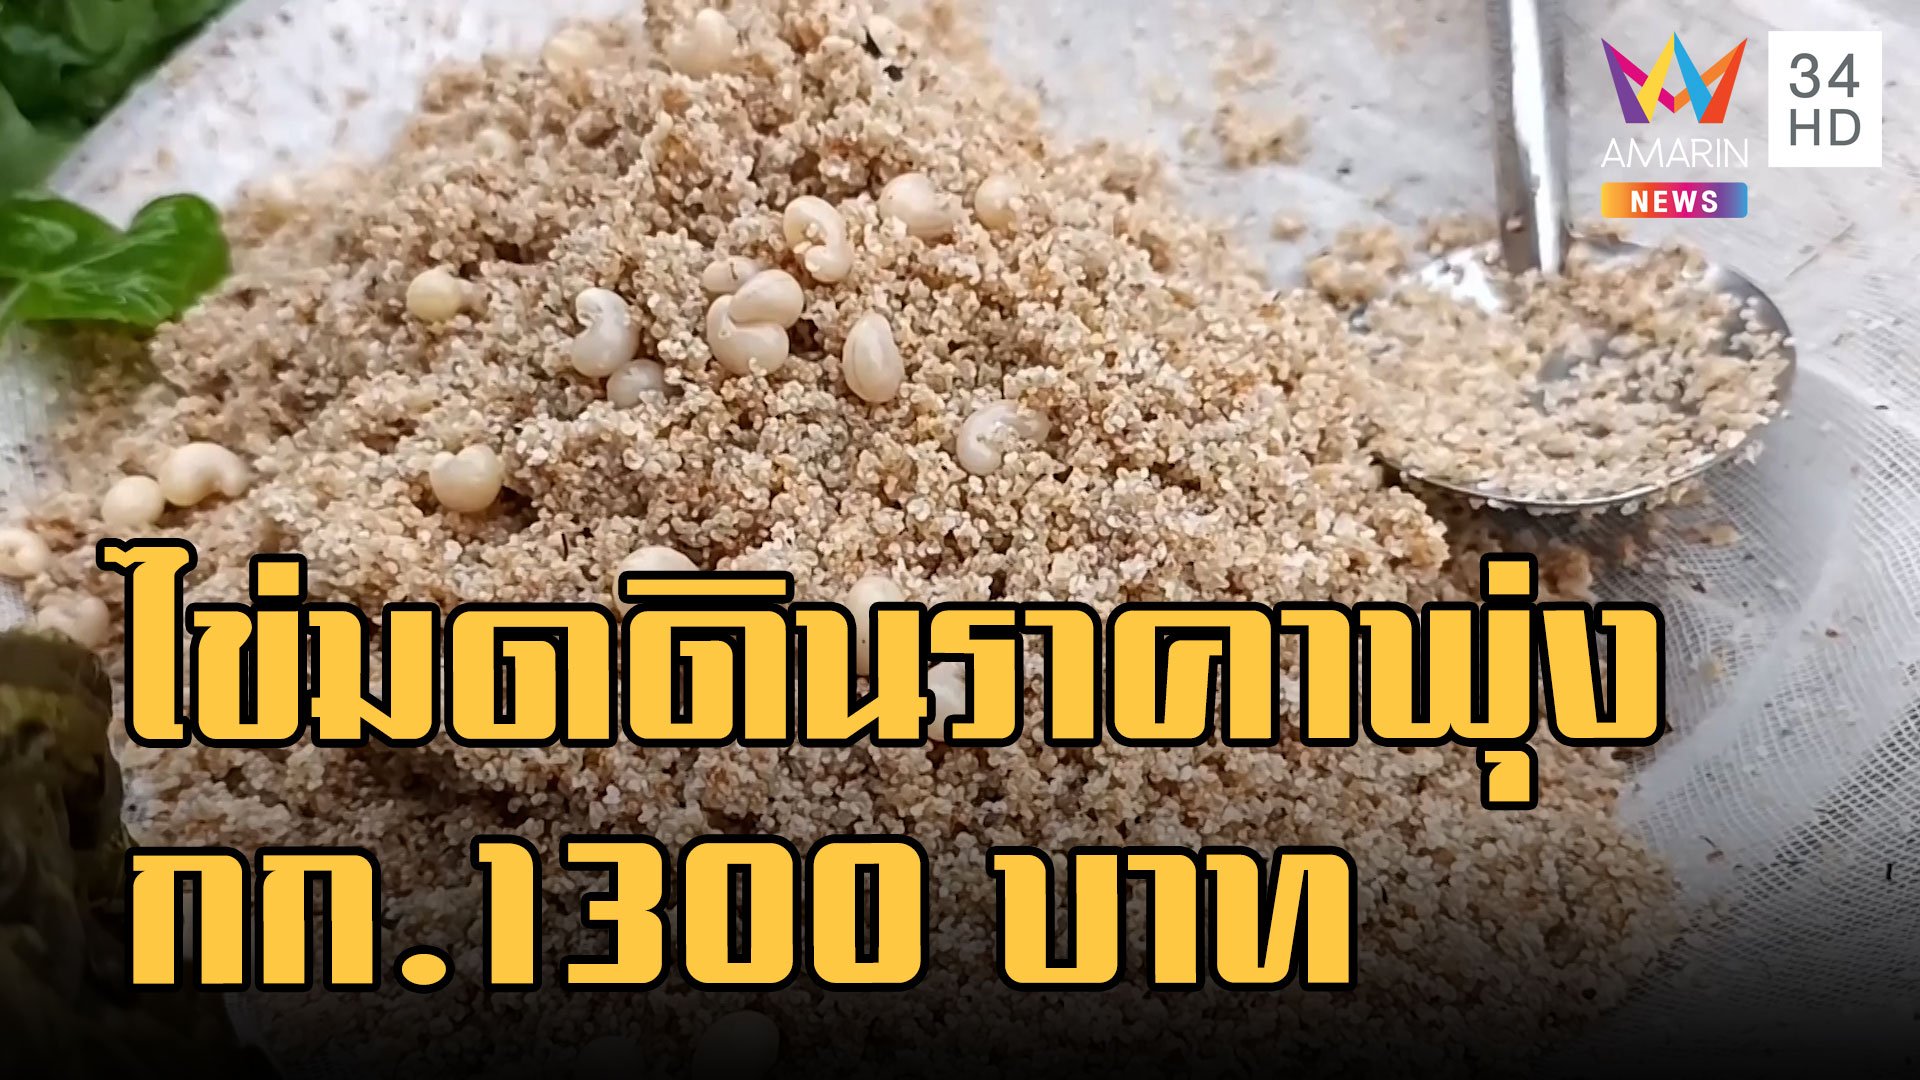 ไข่มดดิน เมนูหายากราคาพุ่งกิโลละ 1,300 บาท | ข่าวอรุณอมรินทร์ | 28 พ.ย. 65 | AMARIN TVHD34